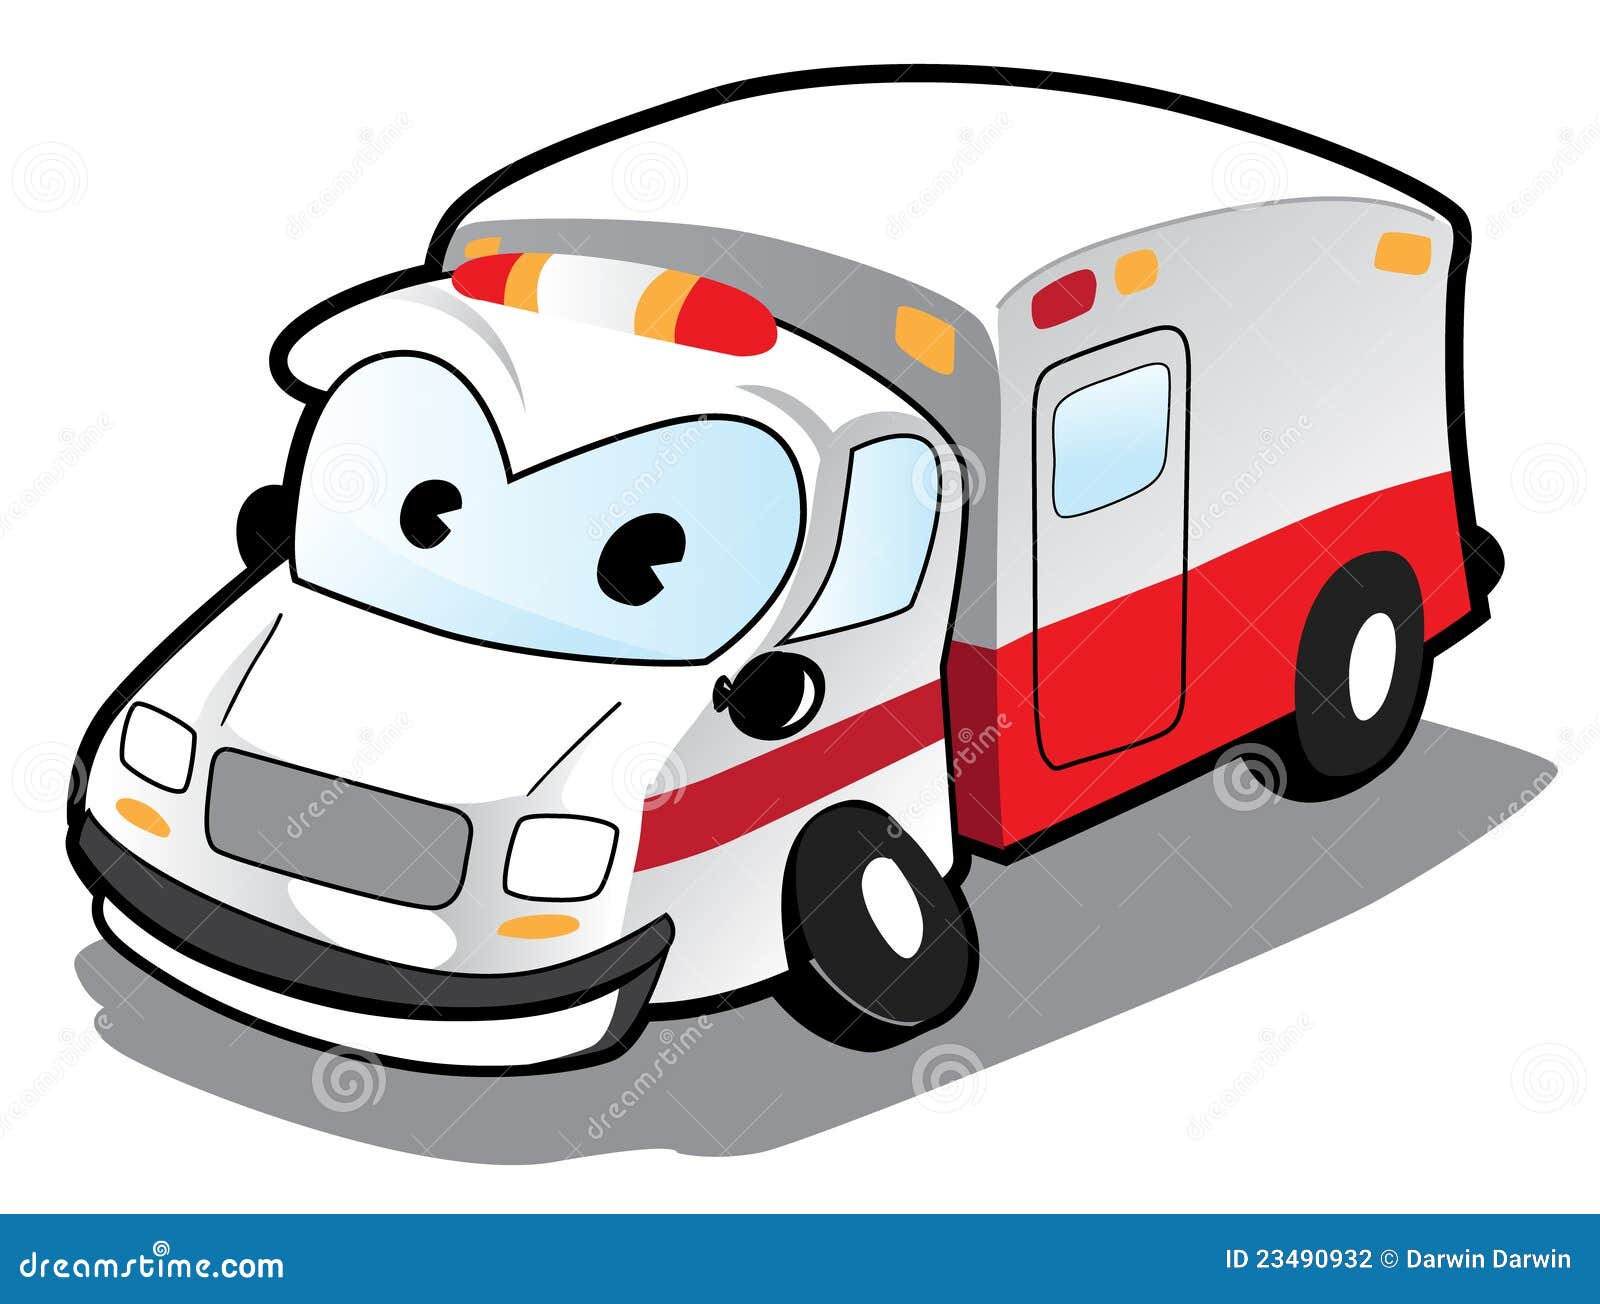 Cartoon Ambulance Stock Photography - Image: 23490932